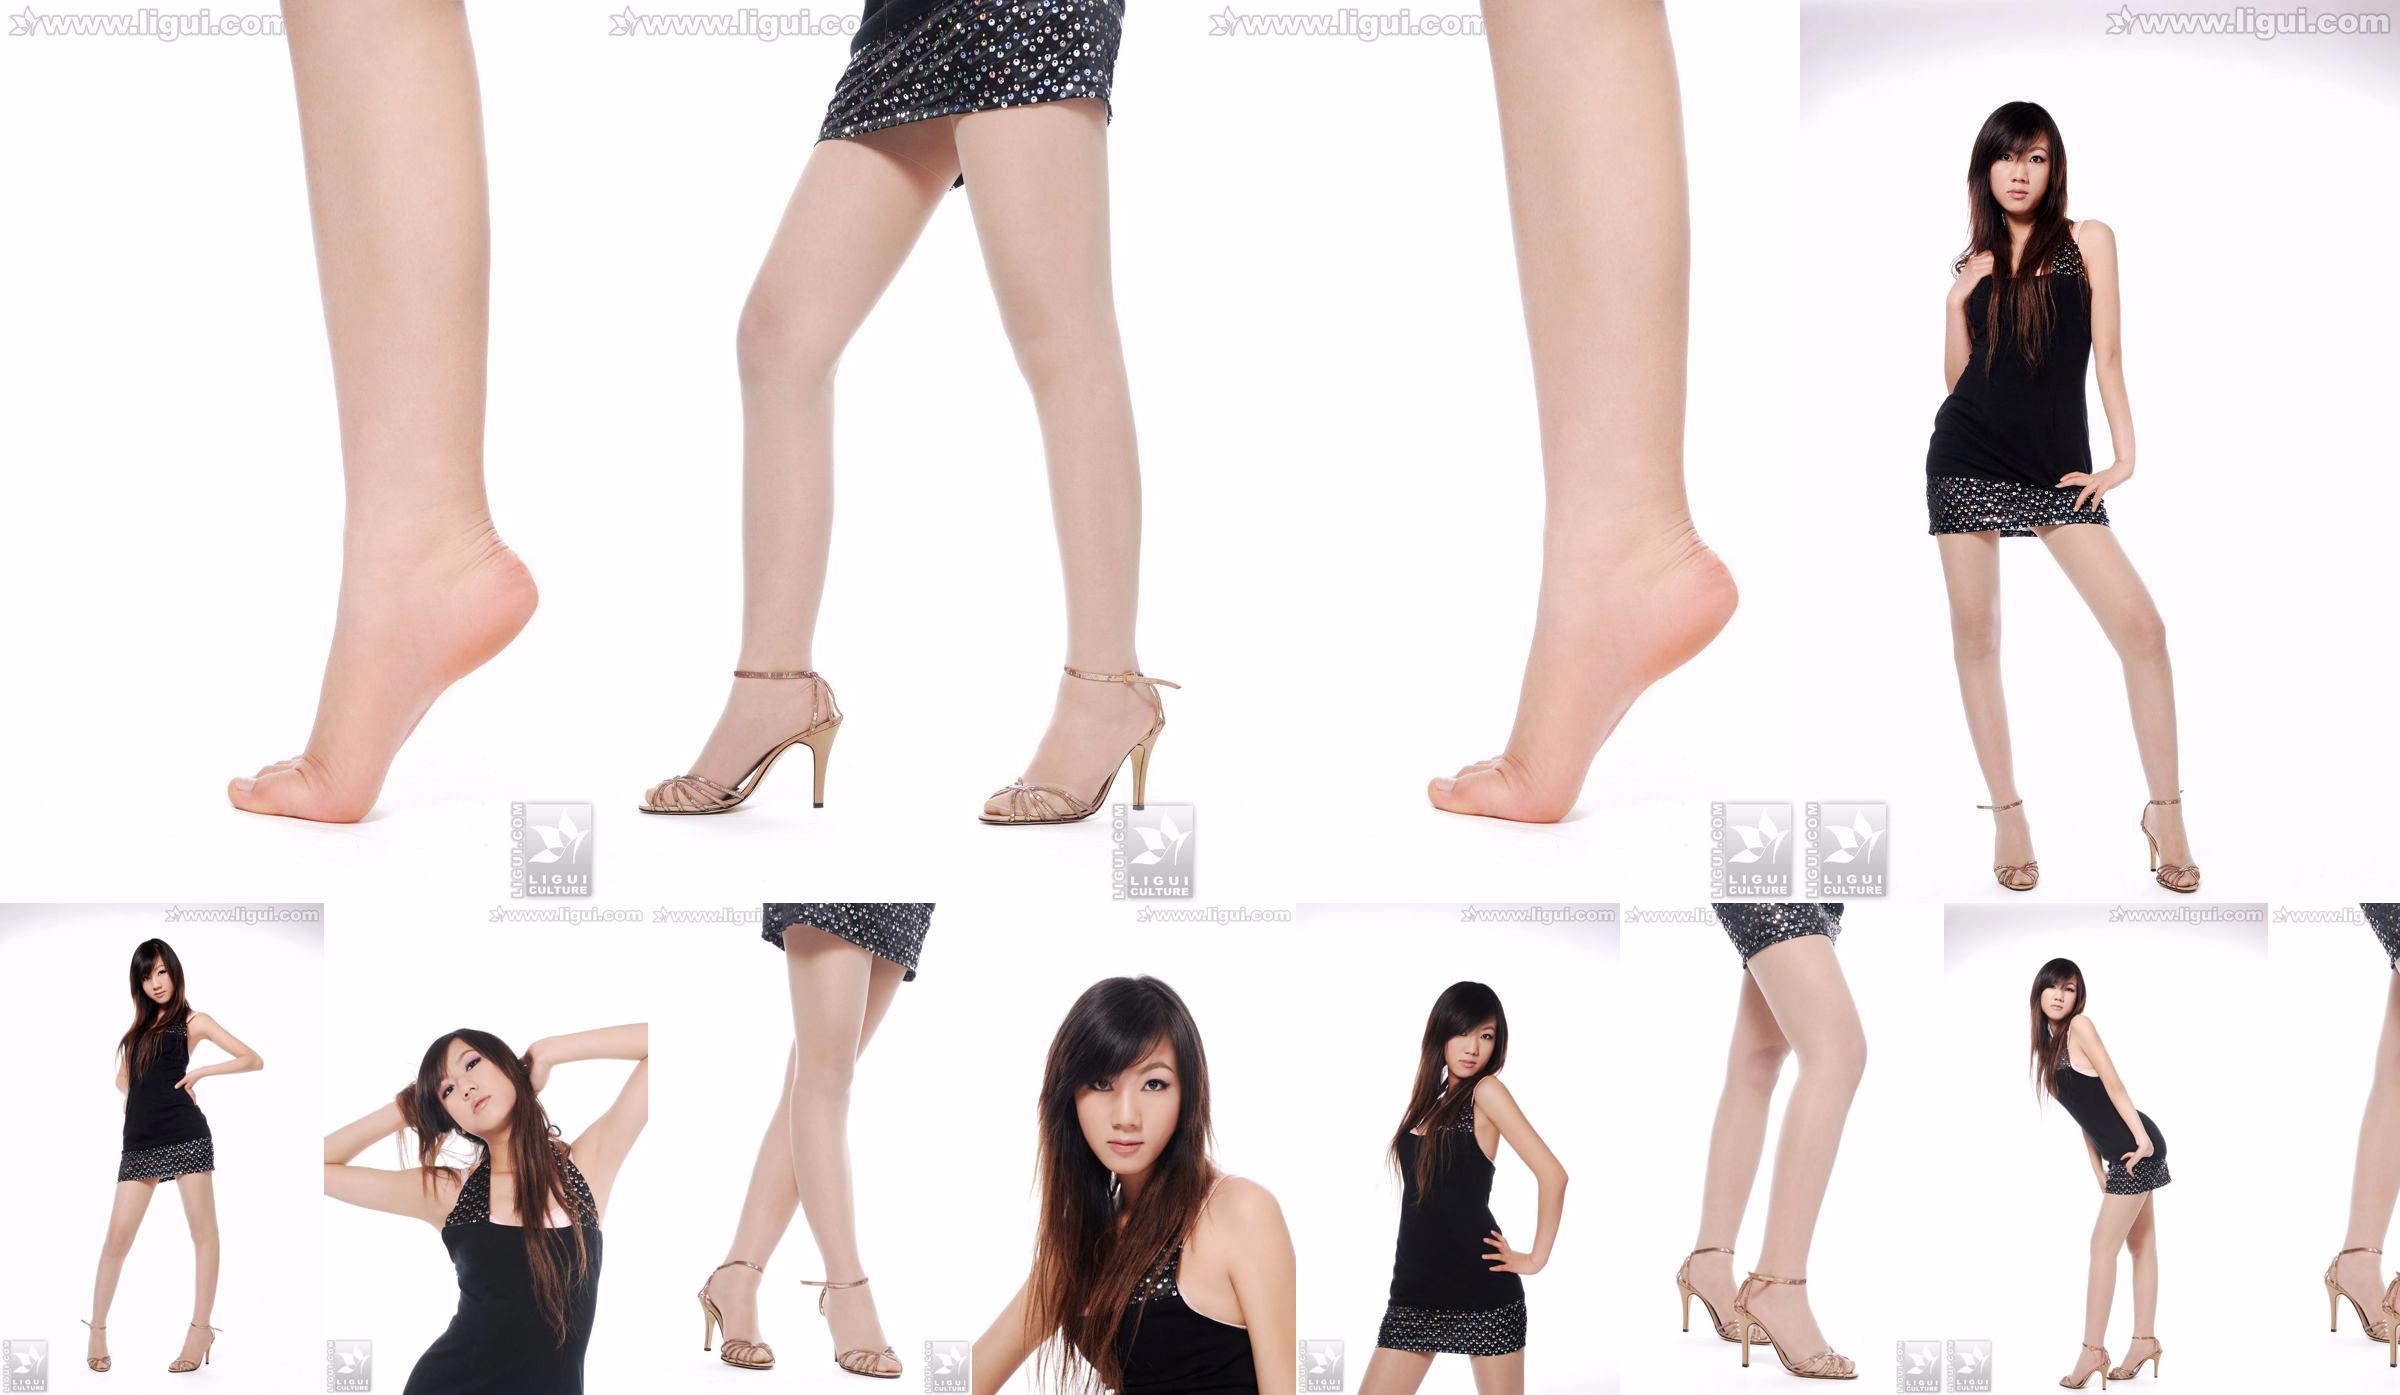 Người mẫu Sheng Chao "Giày cao gót ngọc xinh show mới" [Sheng LiGui] Ảnh chụp chân dài ngọc nữ xinh đẹp No.3b9d73 Trang 1